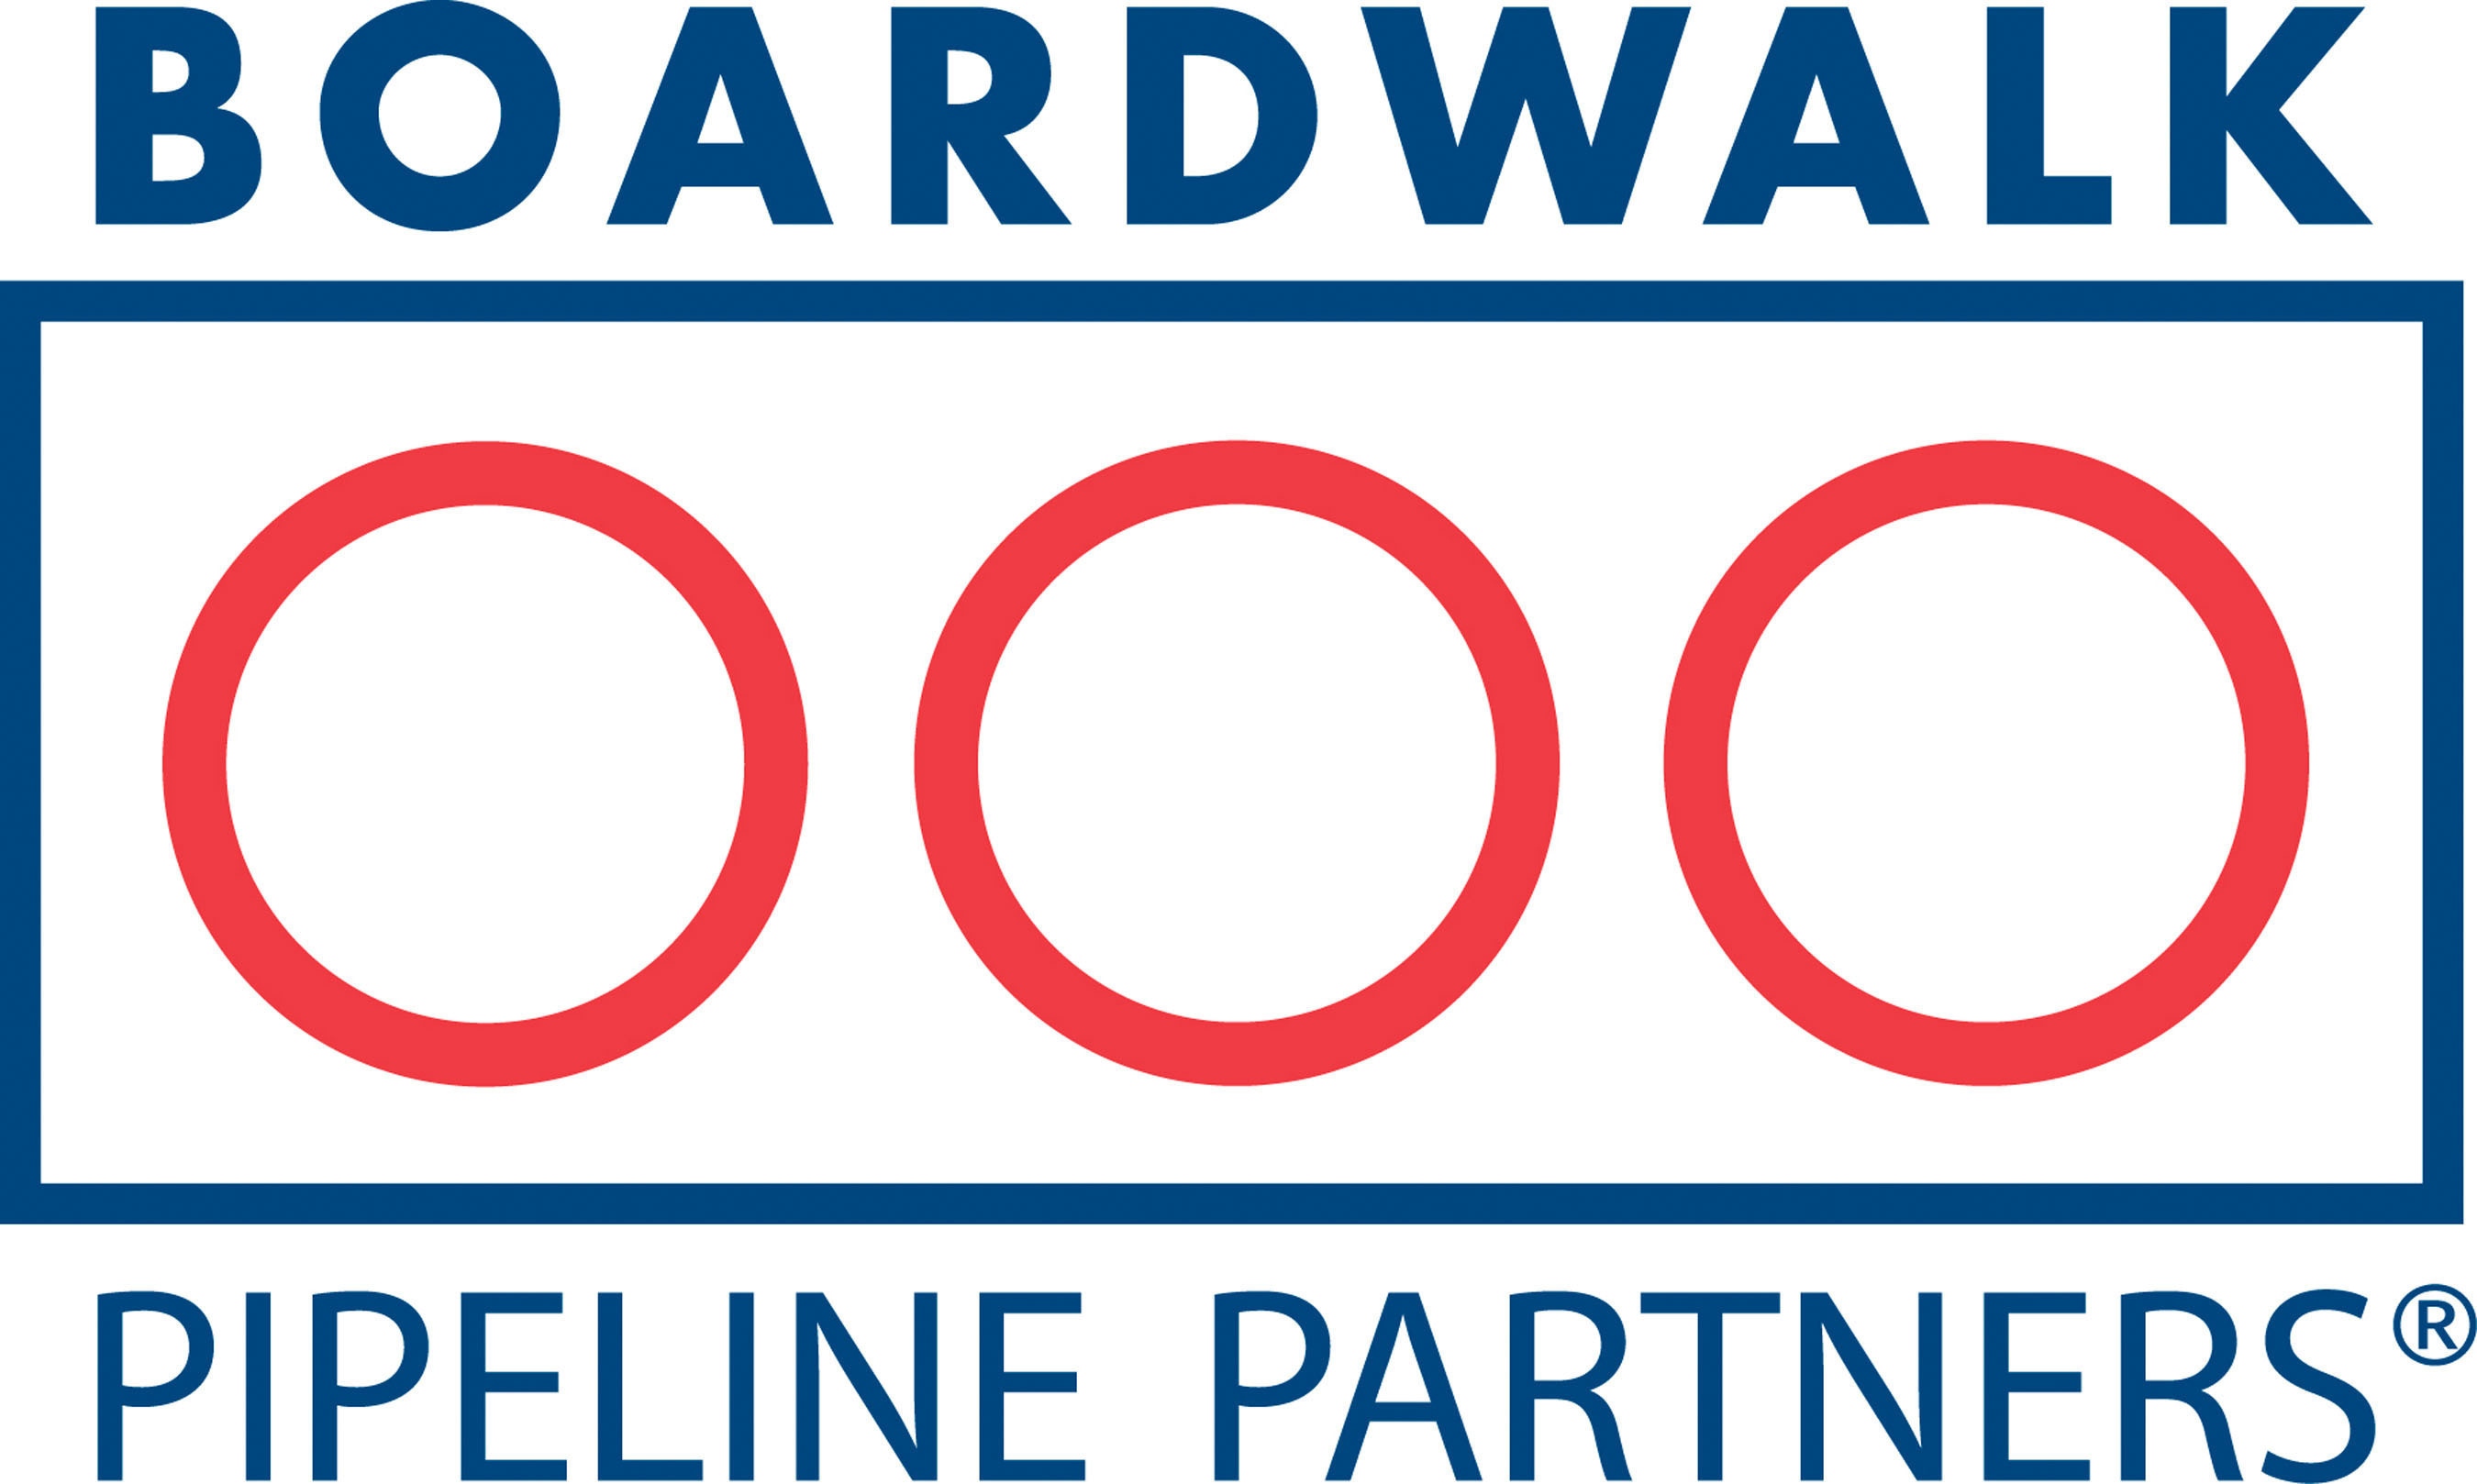 Boardwalk Pipeline Partners logo.